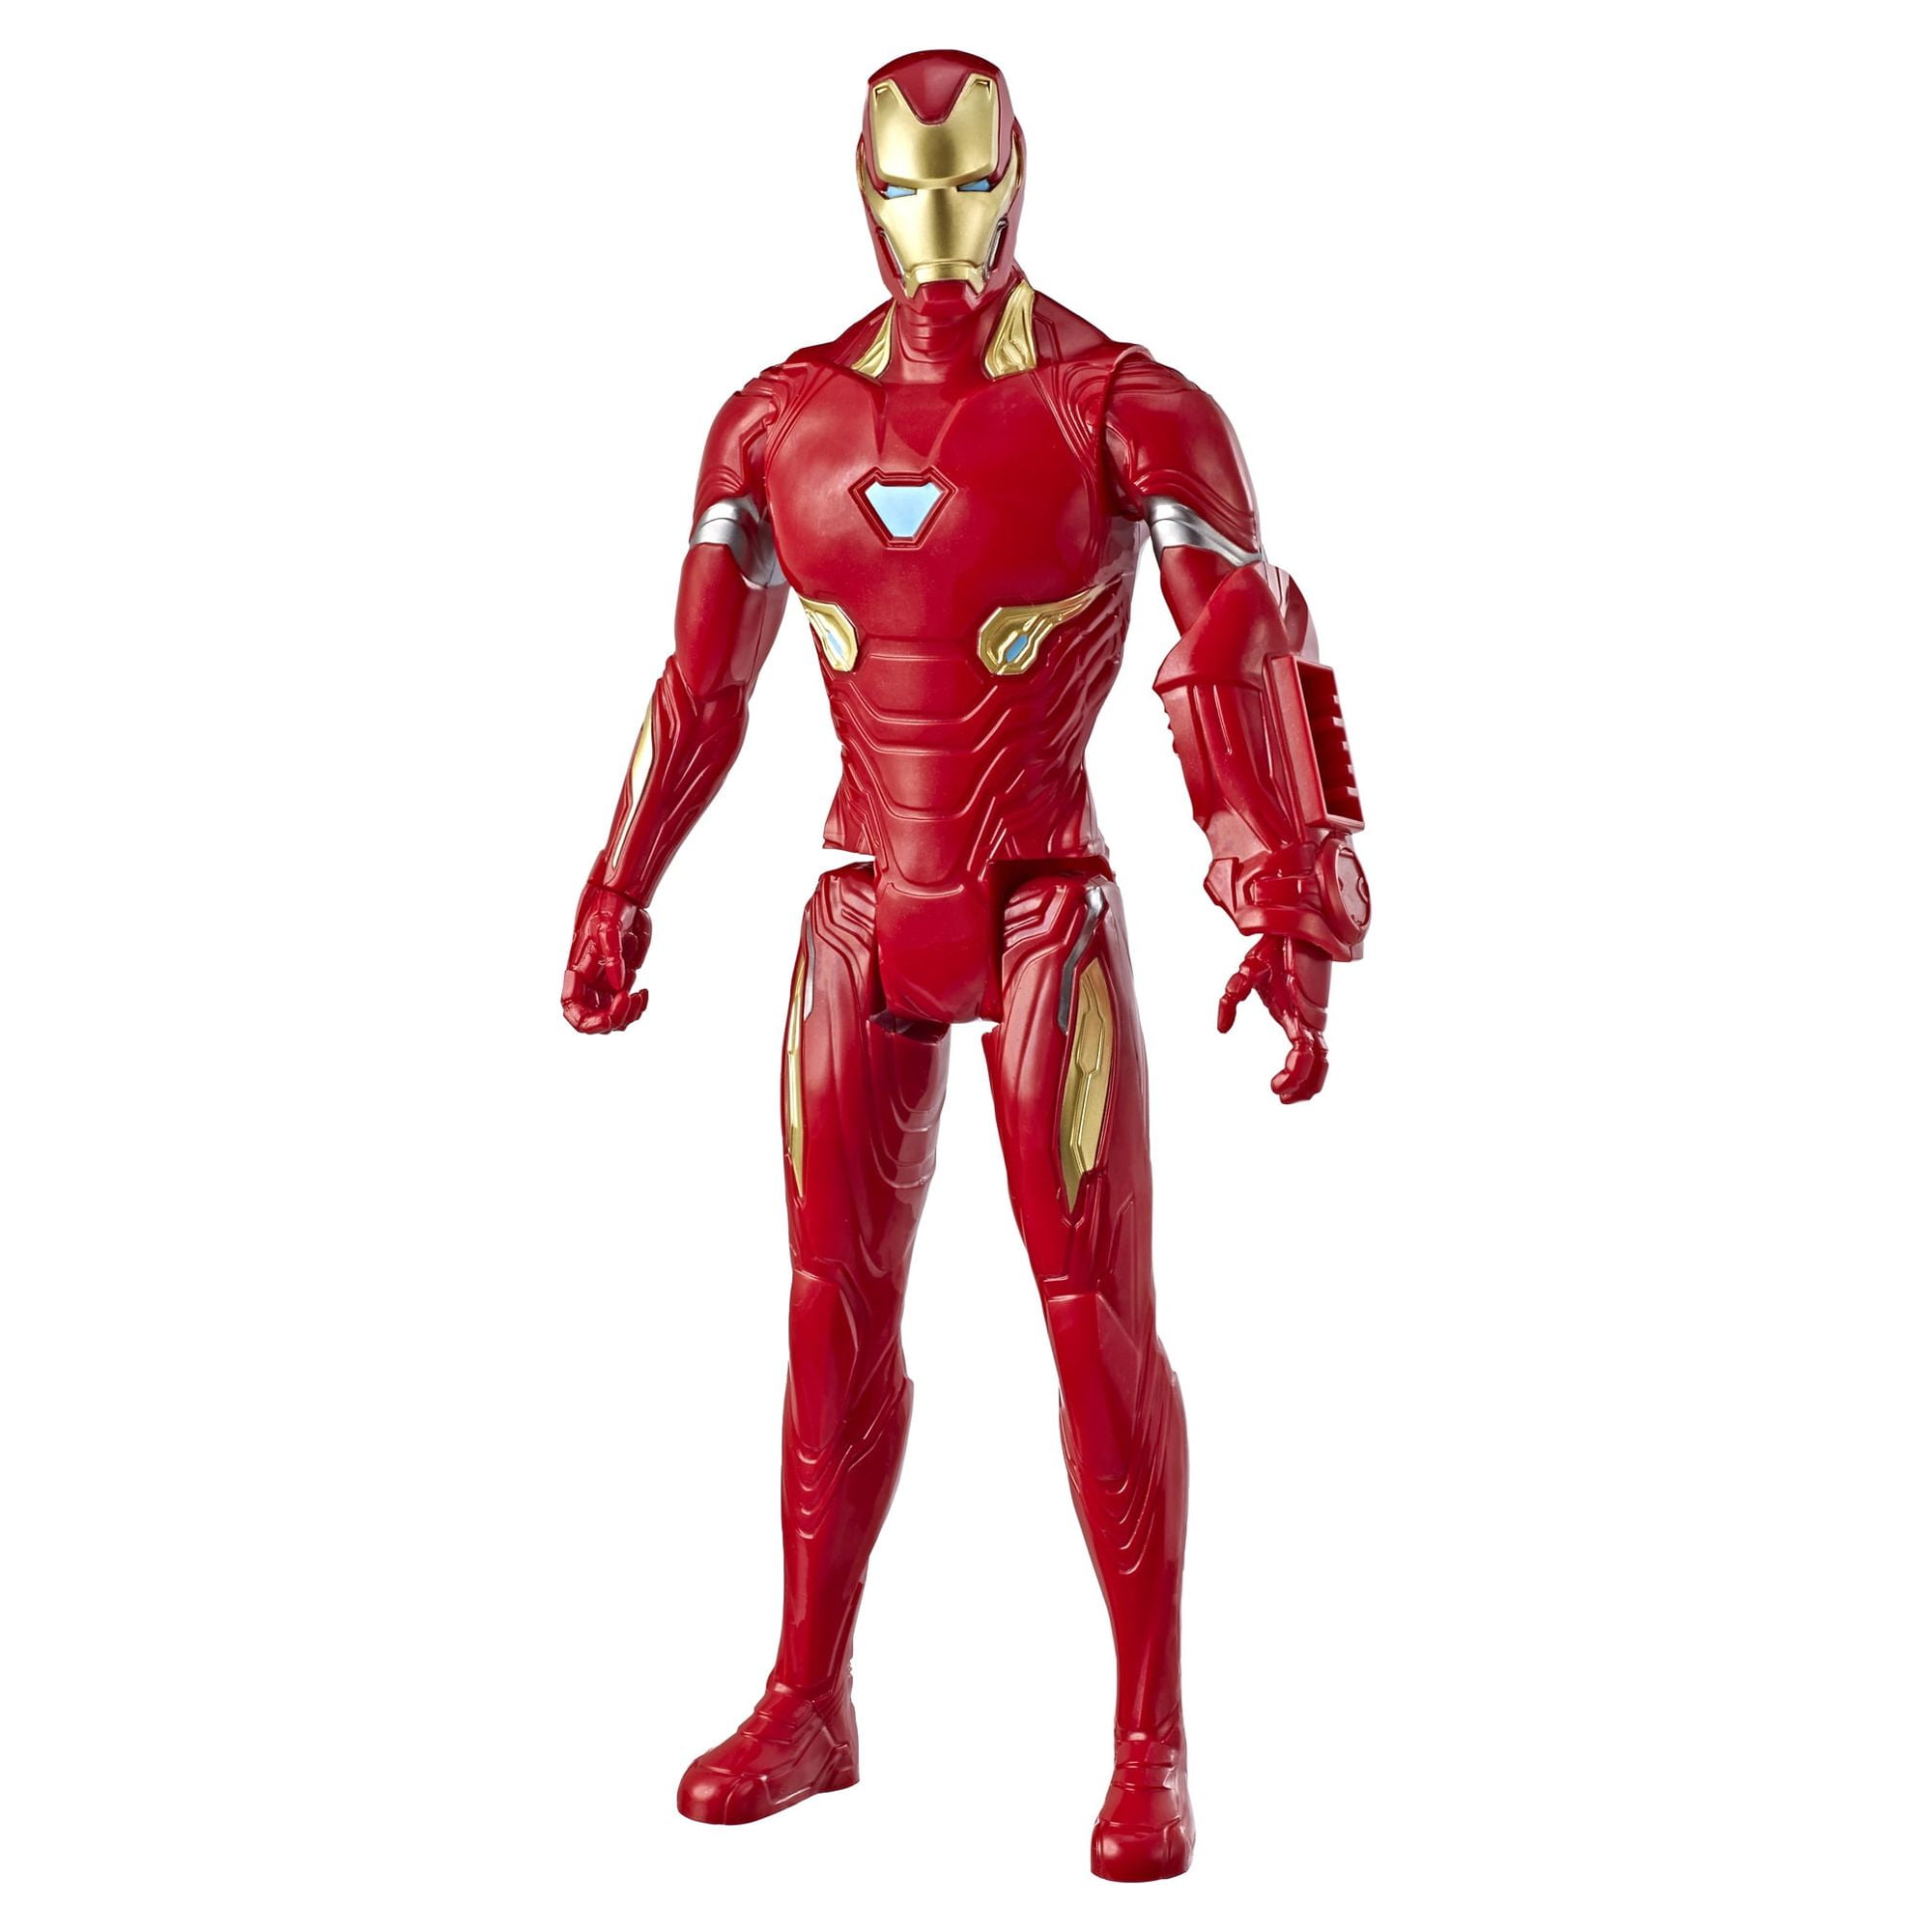 Marvel Avengers: Titan Hero Series Endgame Iron Man Kids Toy